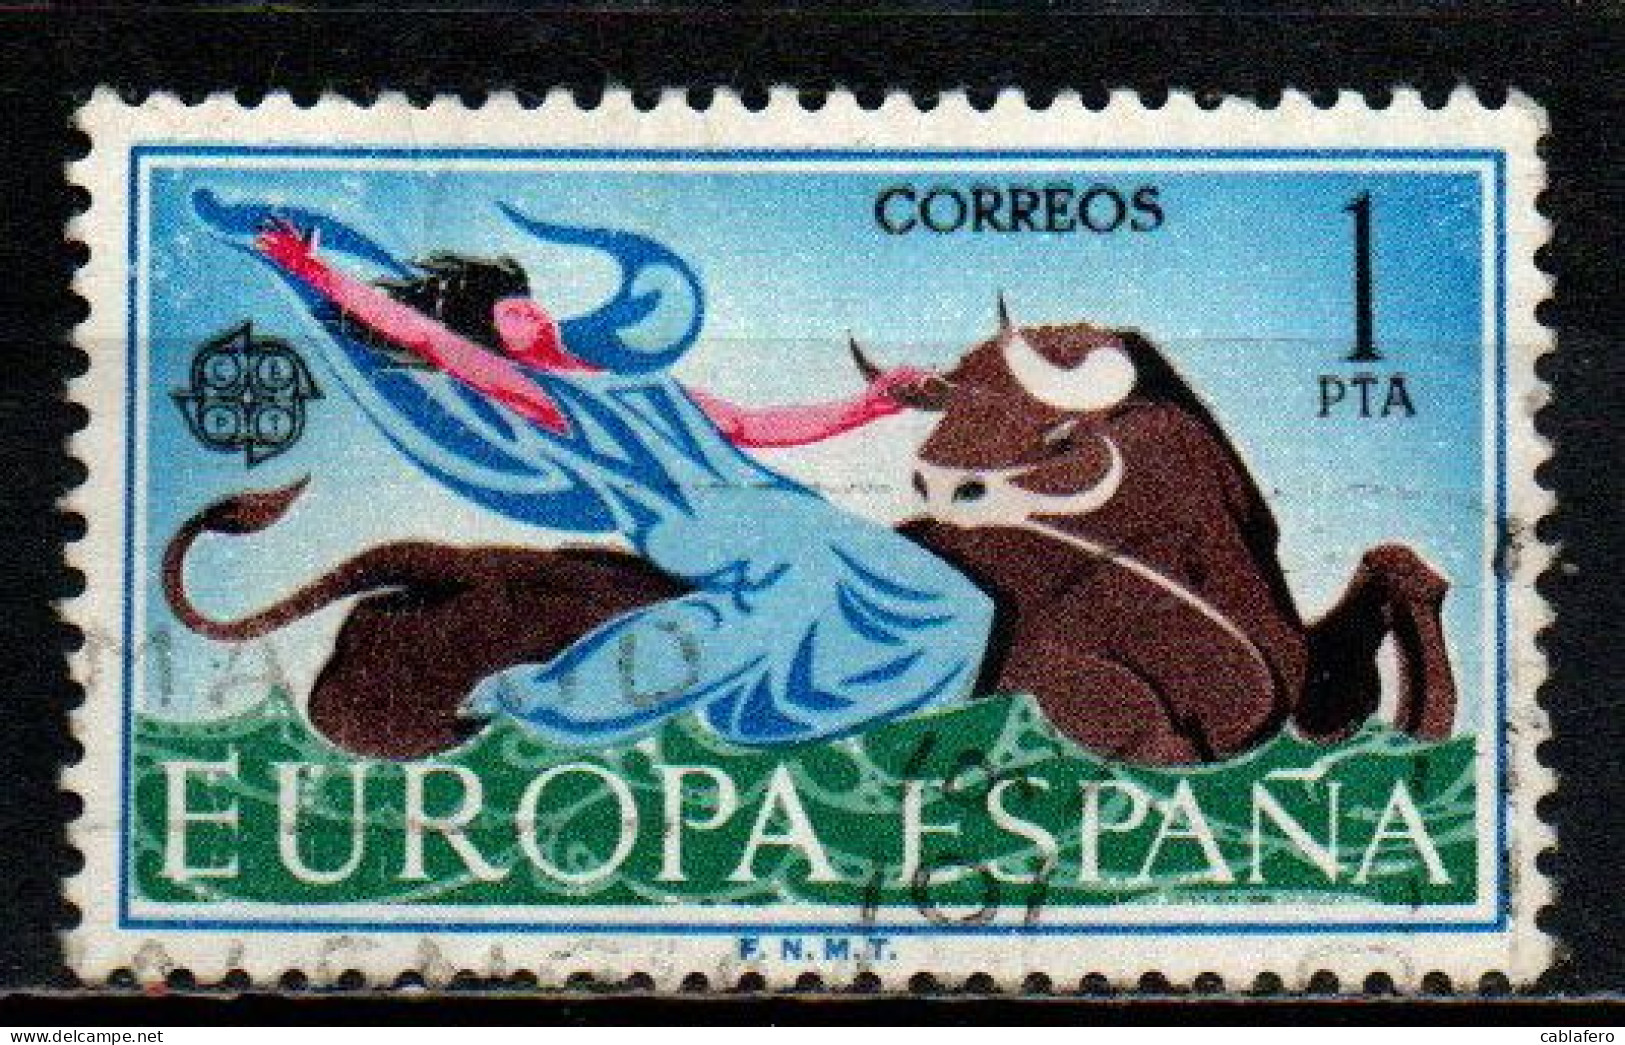 SPAGNA - 1966 - EUROPA: ALLEGORIA DEL RATTO D'EUROPA - USATO - Used Stamps